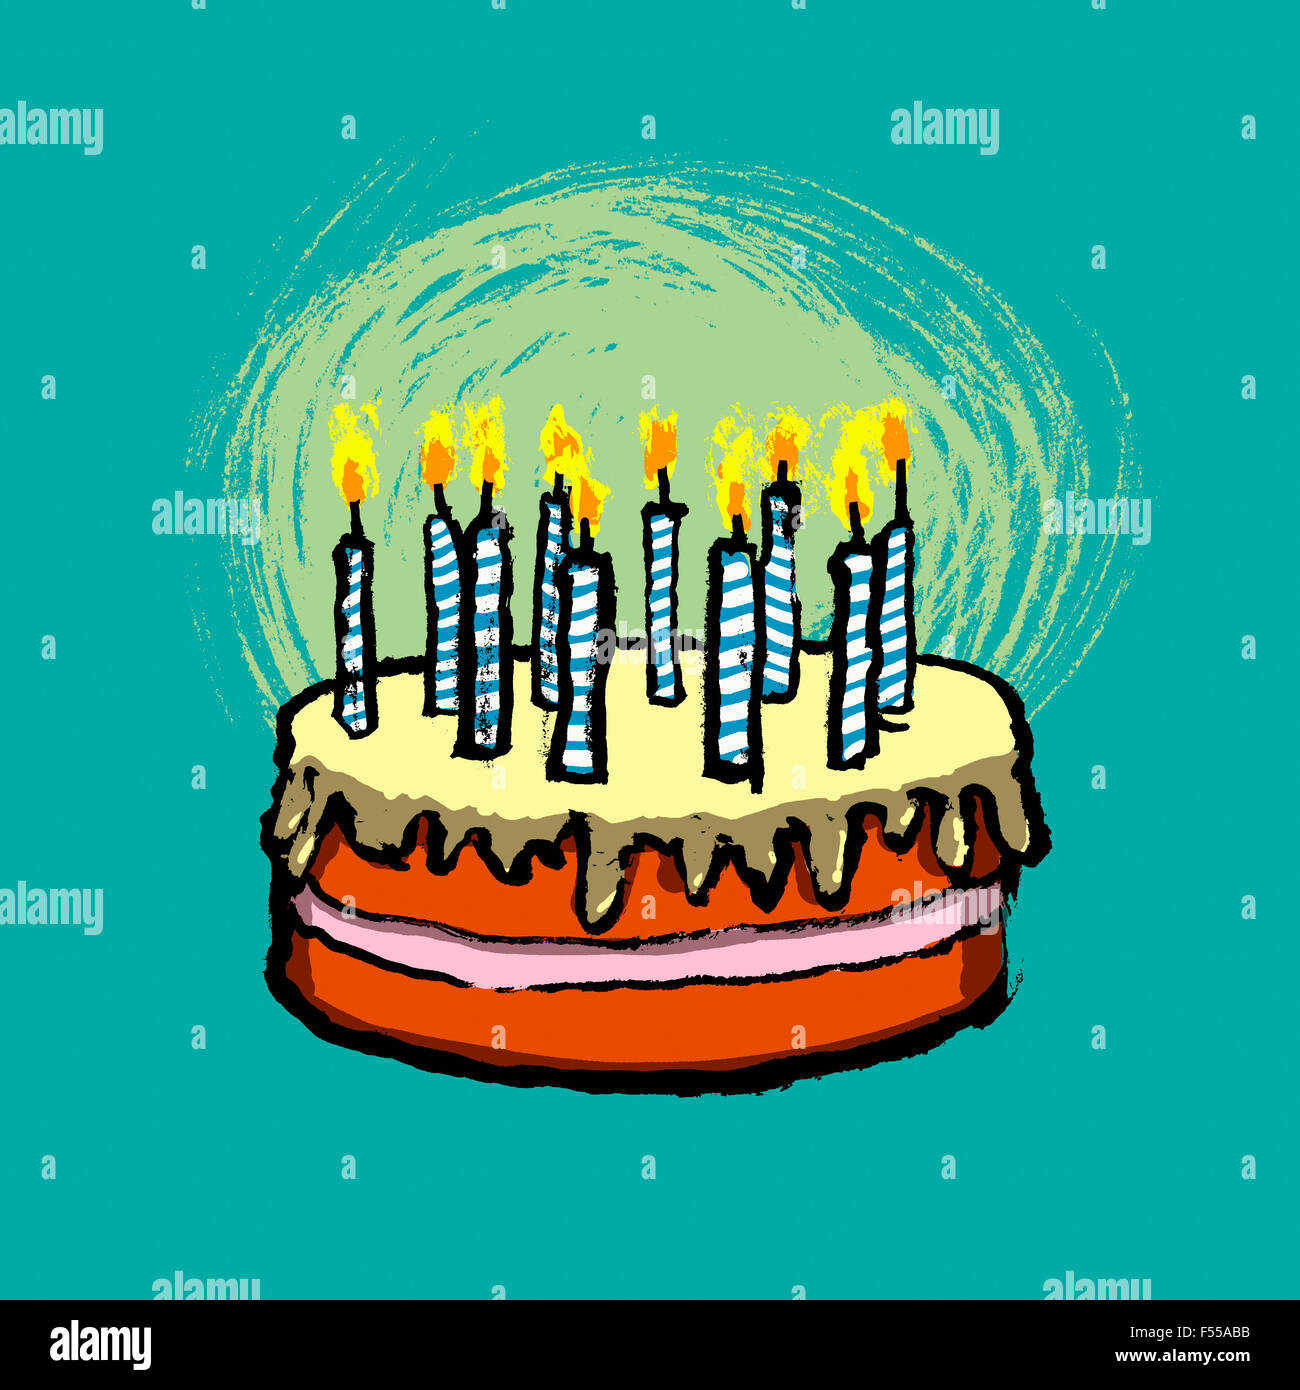 Illustrative image of birthday cake against blue background Stock Photo